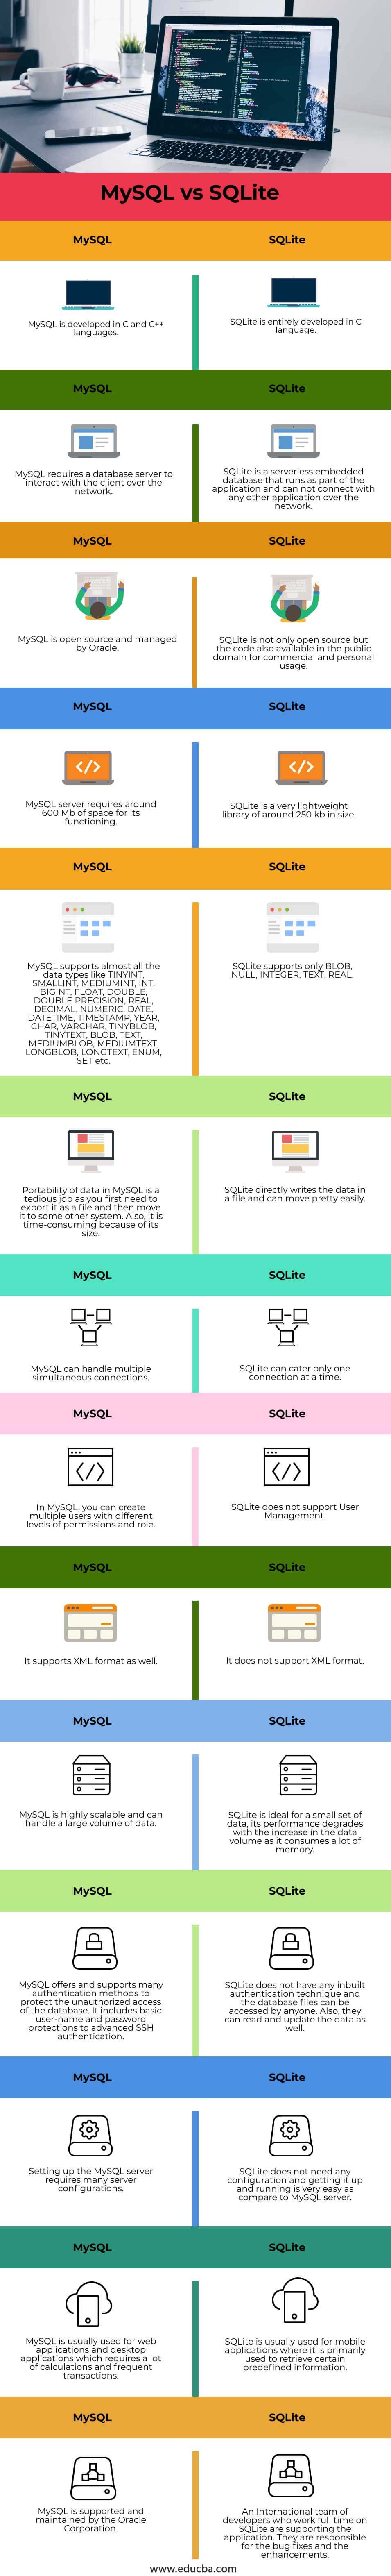 MySQL-vs-SQLite-info